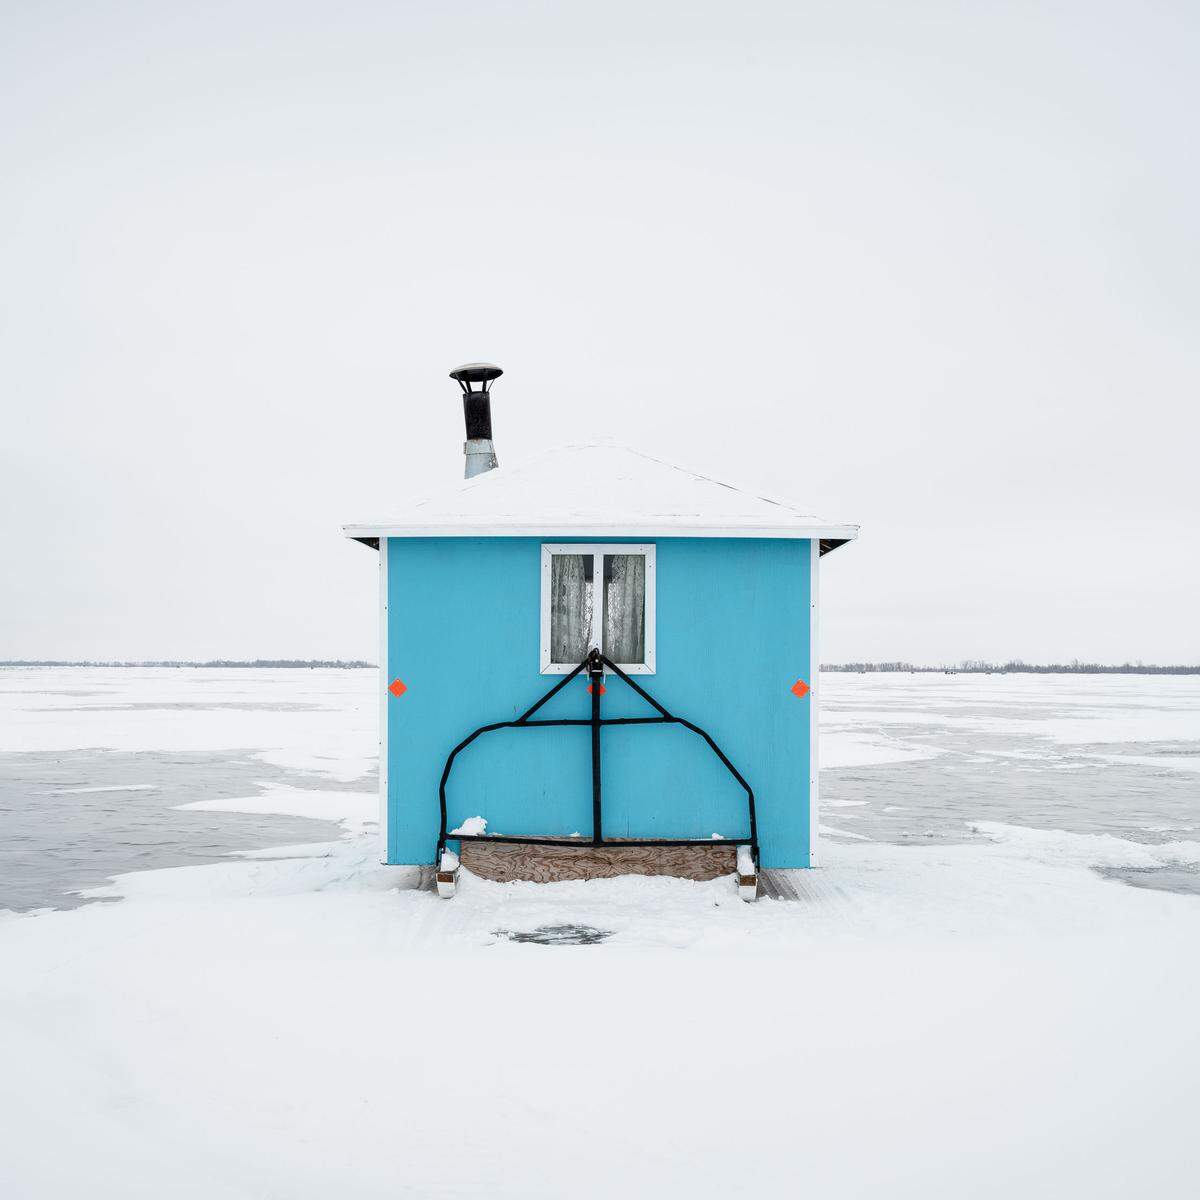 "Ice Fishing Huts", Fotografin: Sandra Herber, Kanada. Jede der Hütten ist individuell gestaltet, manche schlicht, andere luxuriös. Gemeinsam ist ihnen der Zugang zum Wasser unter dem Eis. 